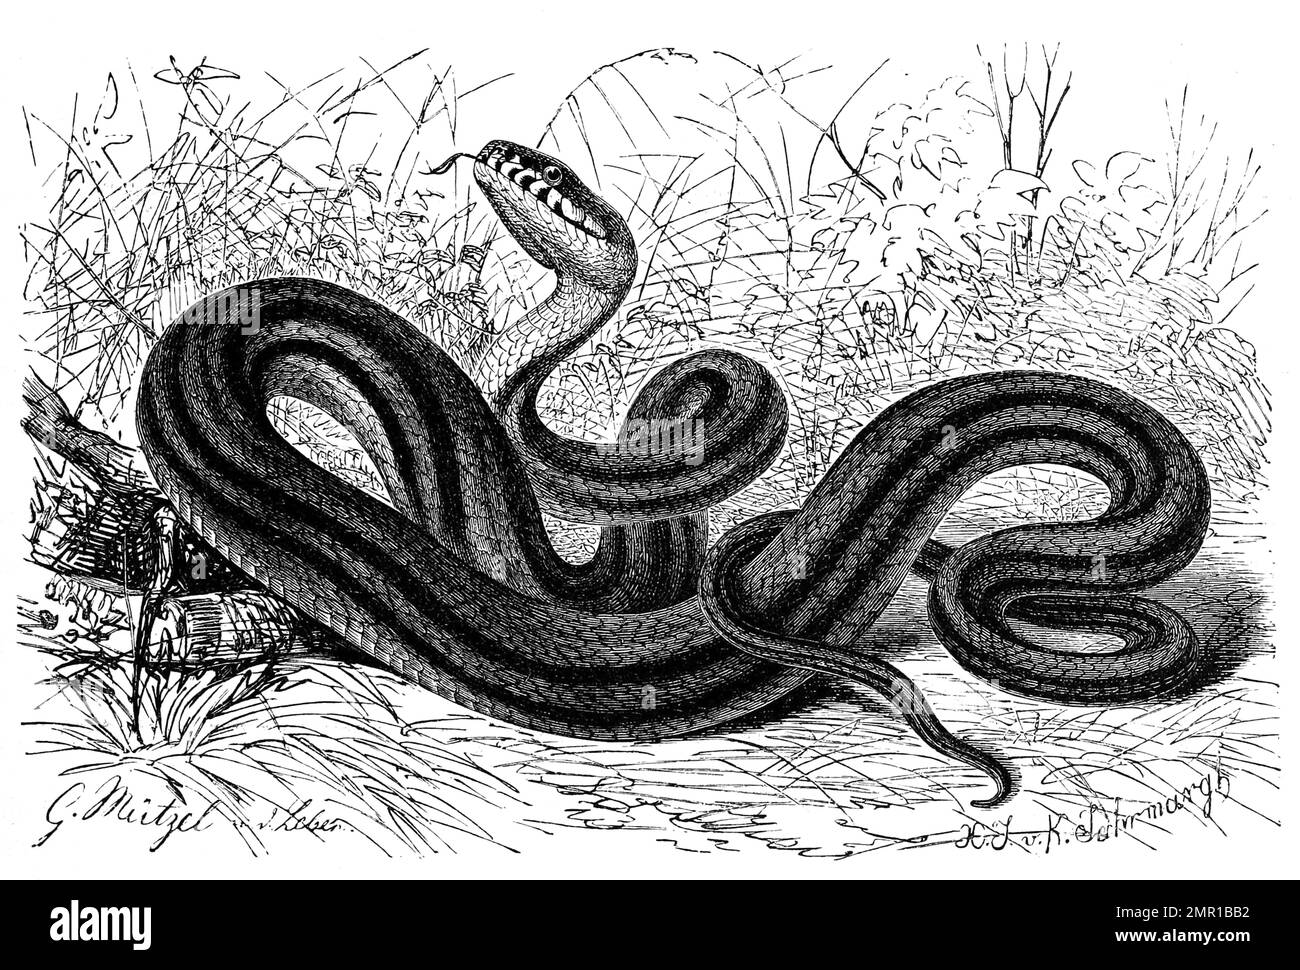 Reptilien, Vierstreifennatter, Elaphe quatuorlineata ist eine Schlangenart aus der Familie der Nattern, Historisch, digital restaurierte Reproduktion von einer Vorlage aus dem 19. Jahrhundert Stock Photo